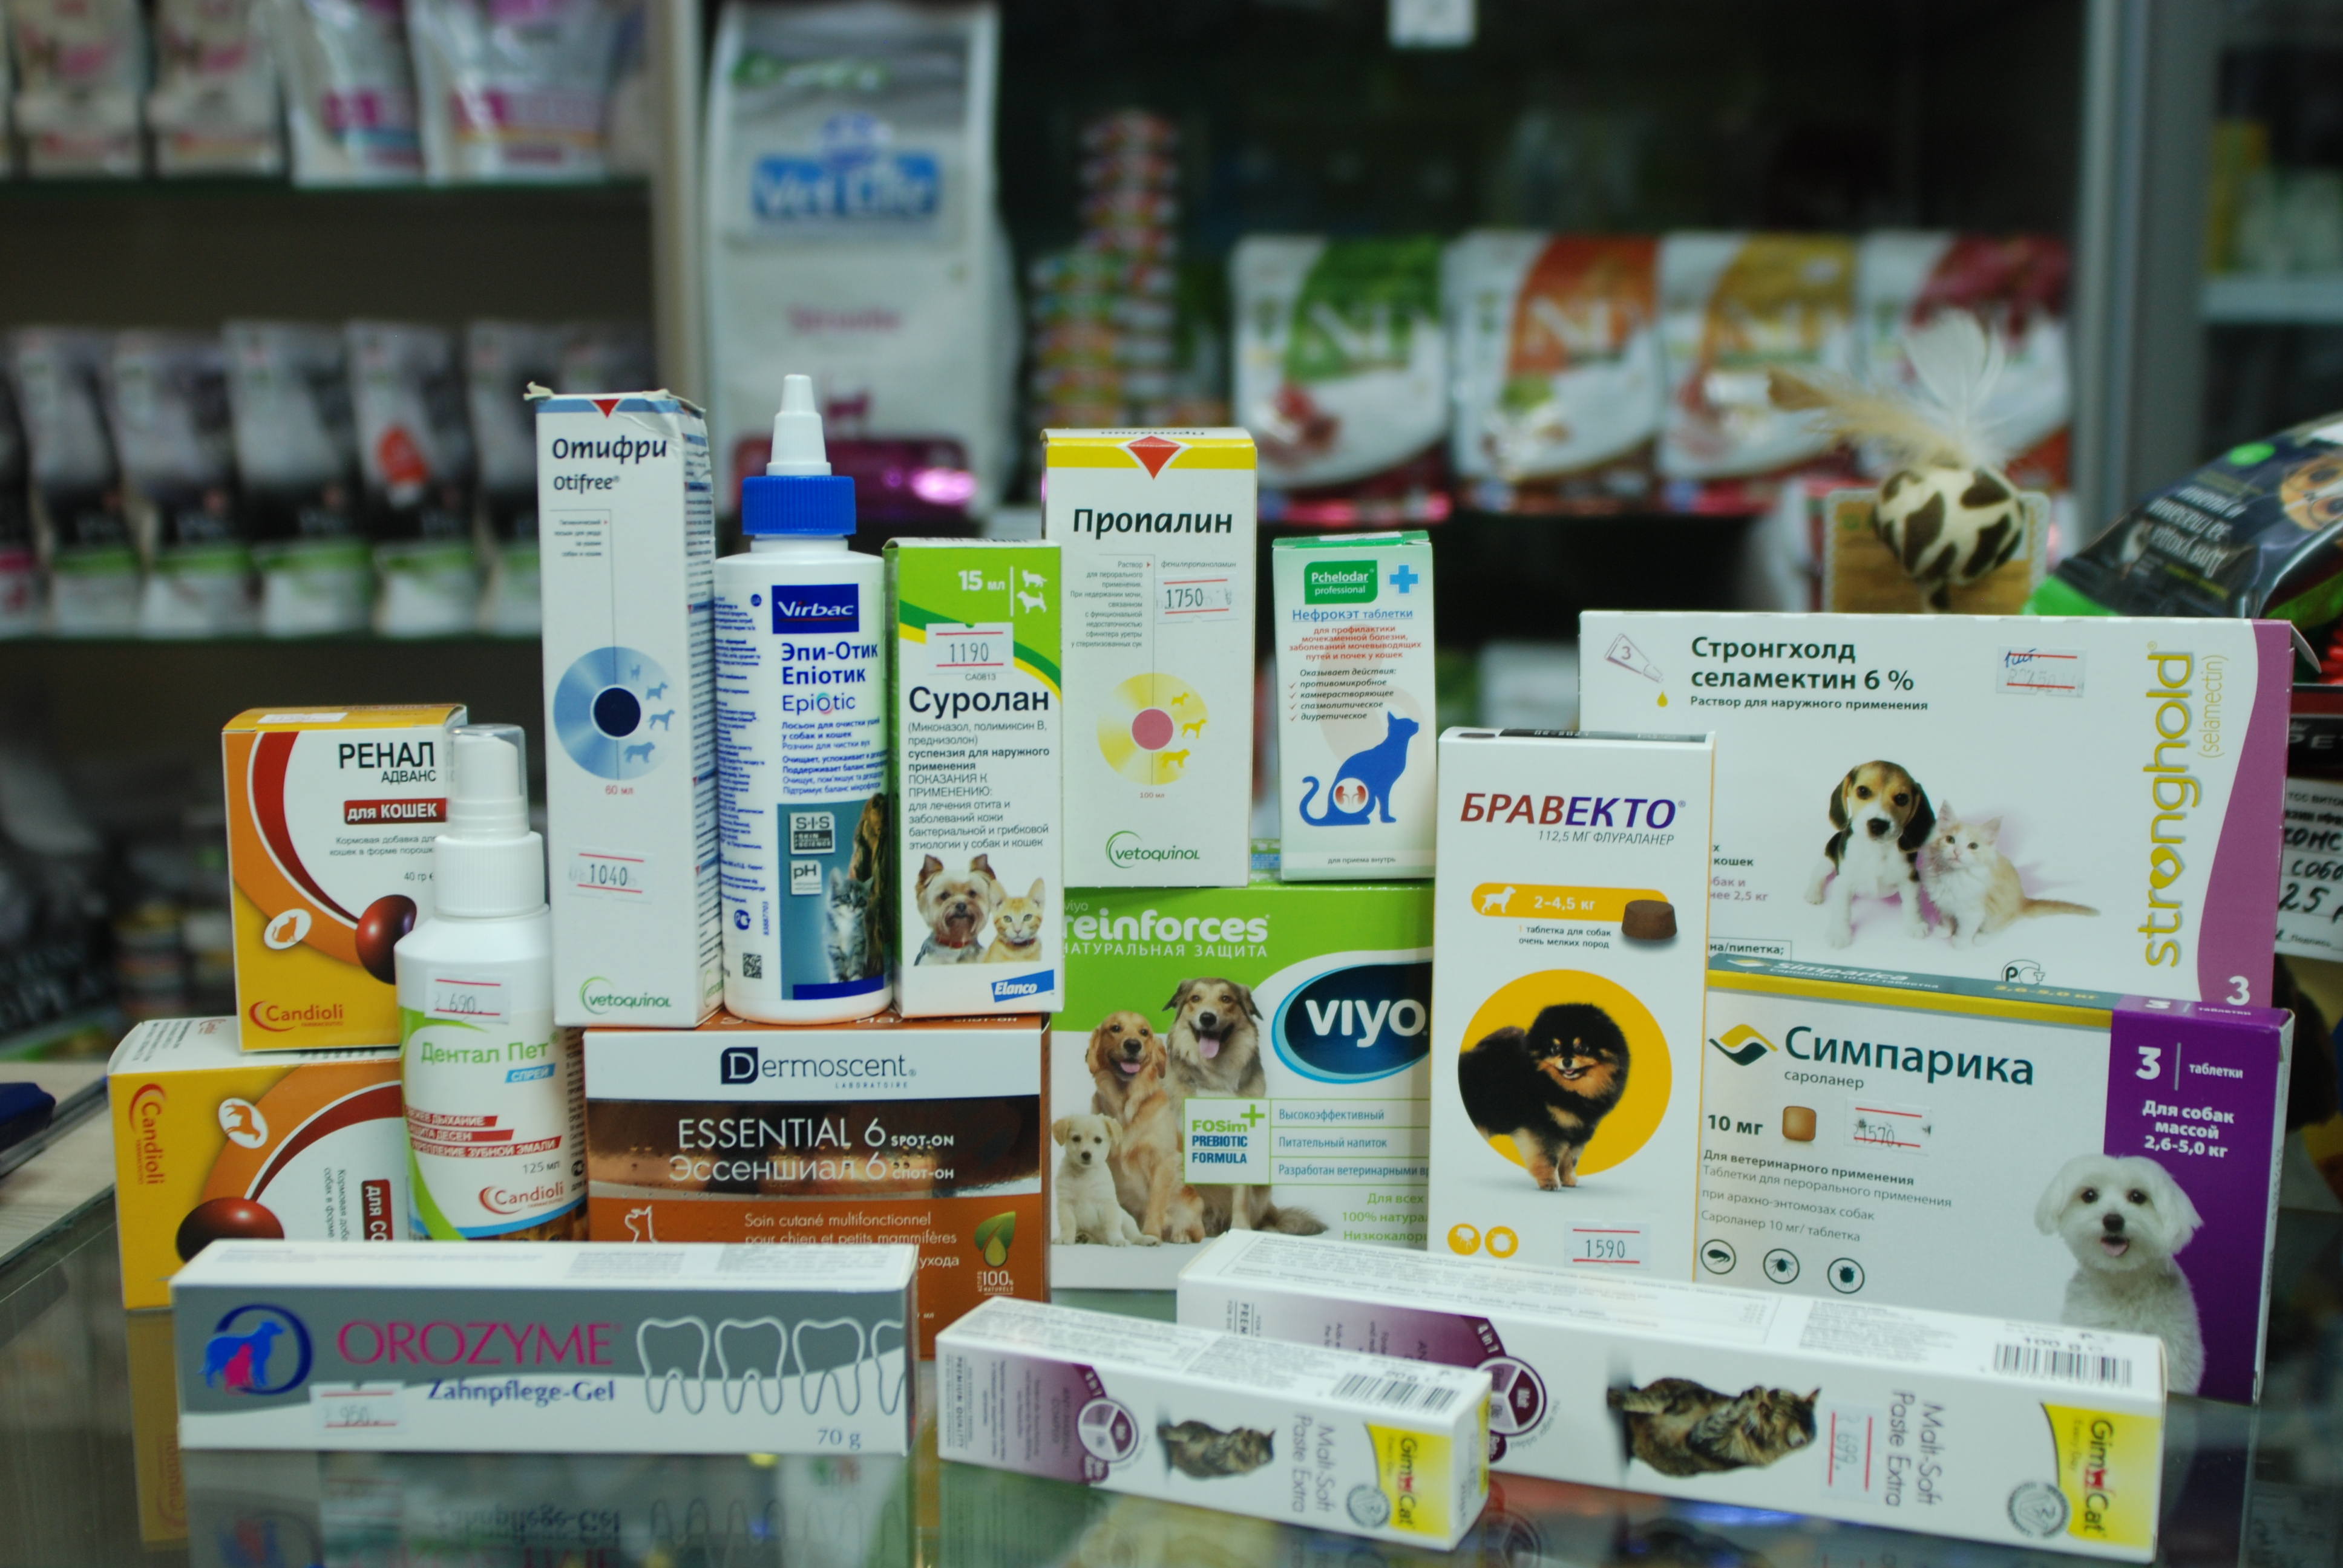 Ветеринарные интернет магазины москвы. Ветеринарная интернет аптека. Производители ветеринарных препаратов. Ветаптека ассортимент. Ассортимент ветеринарных препаратов.